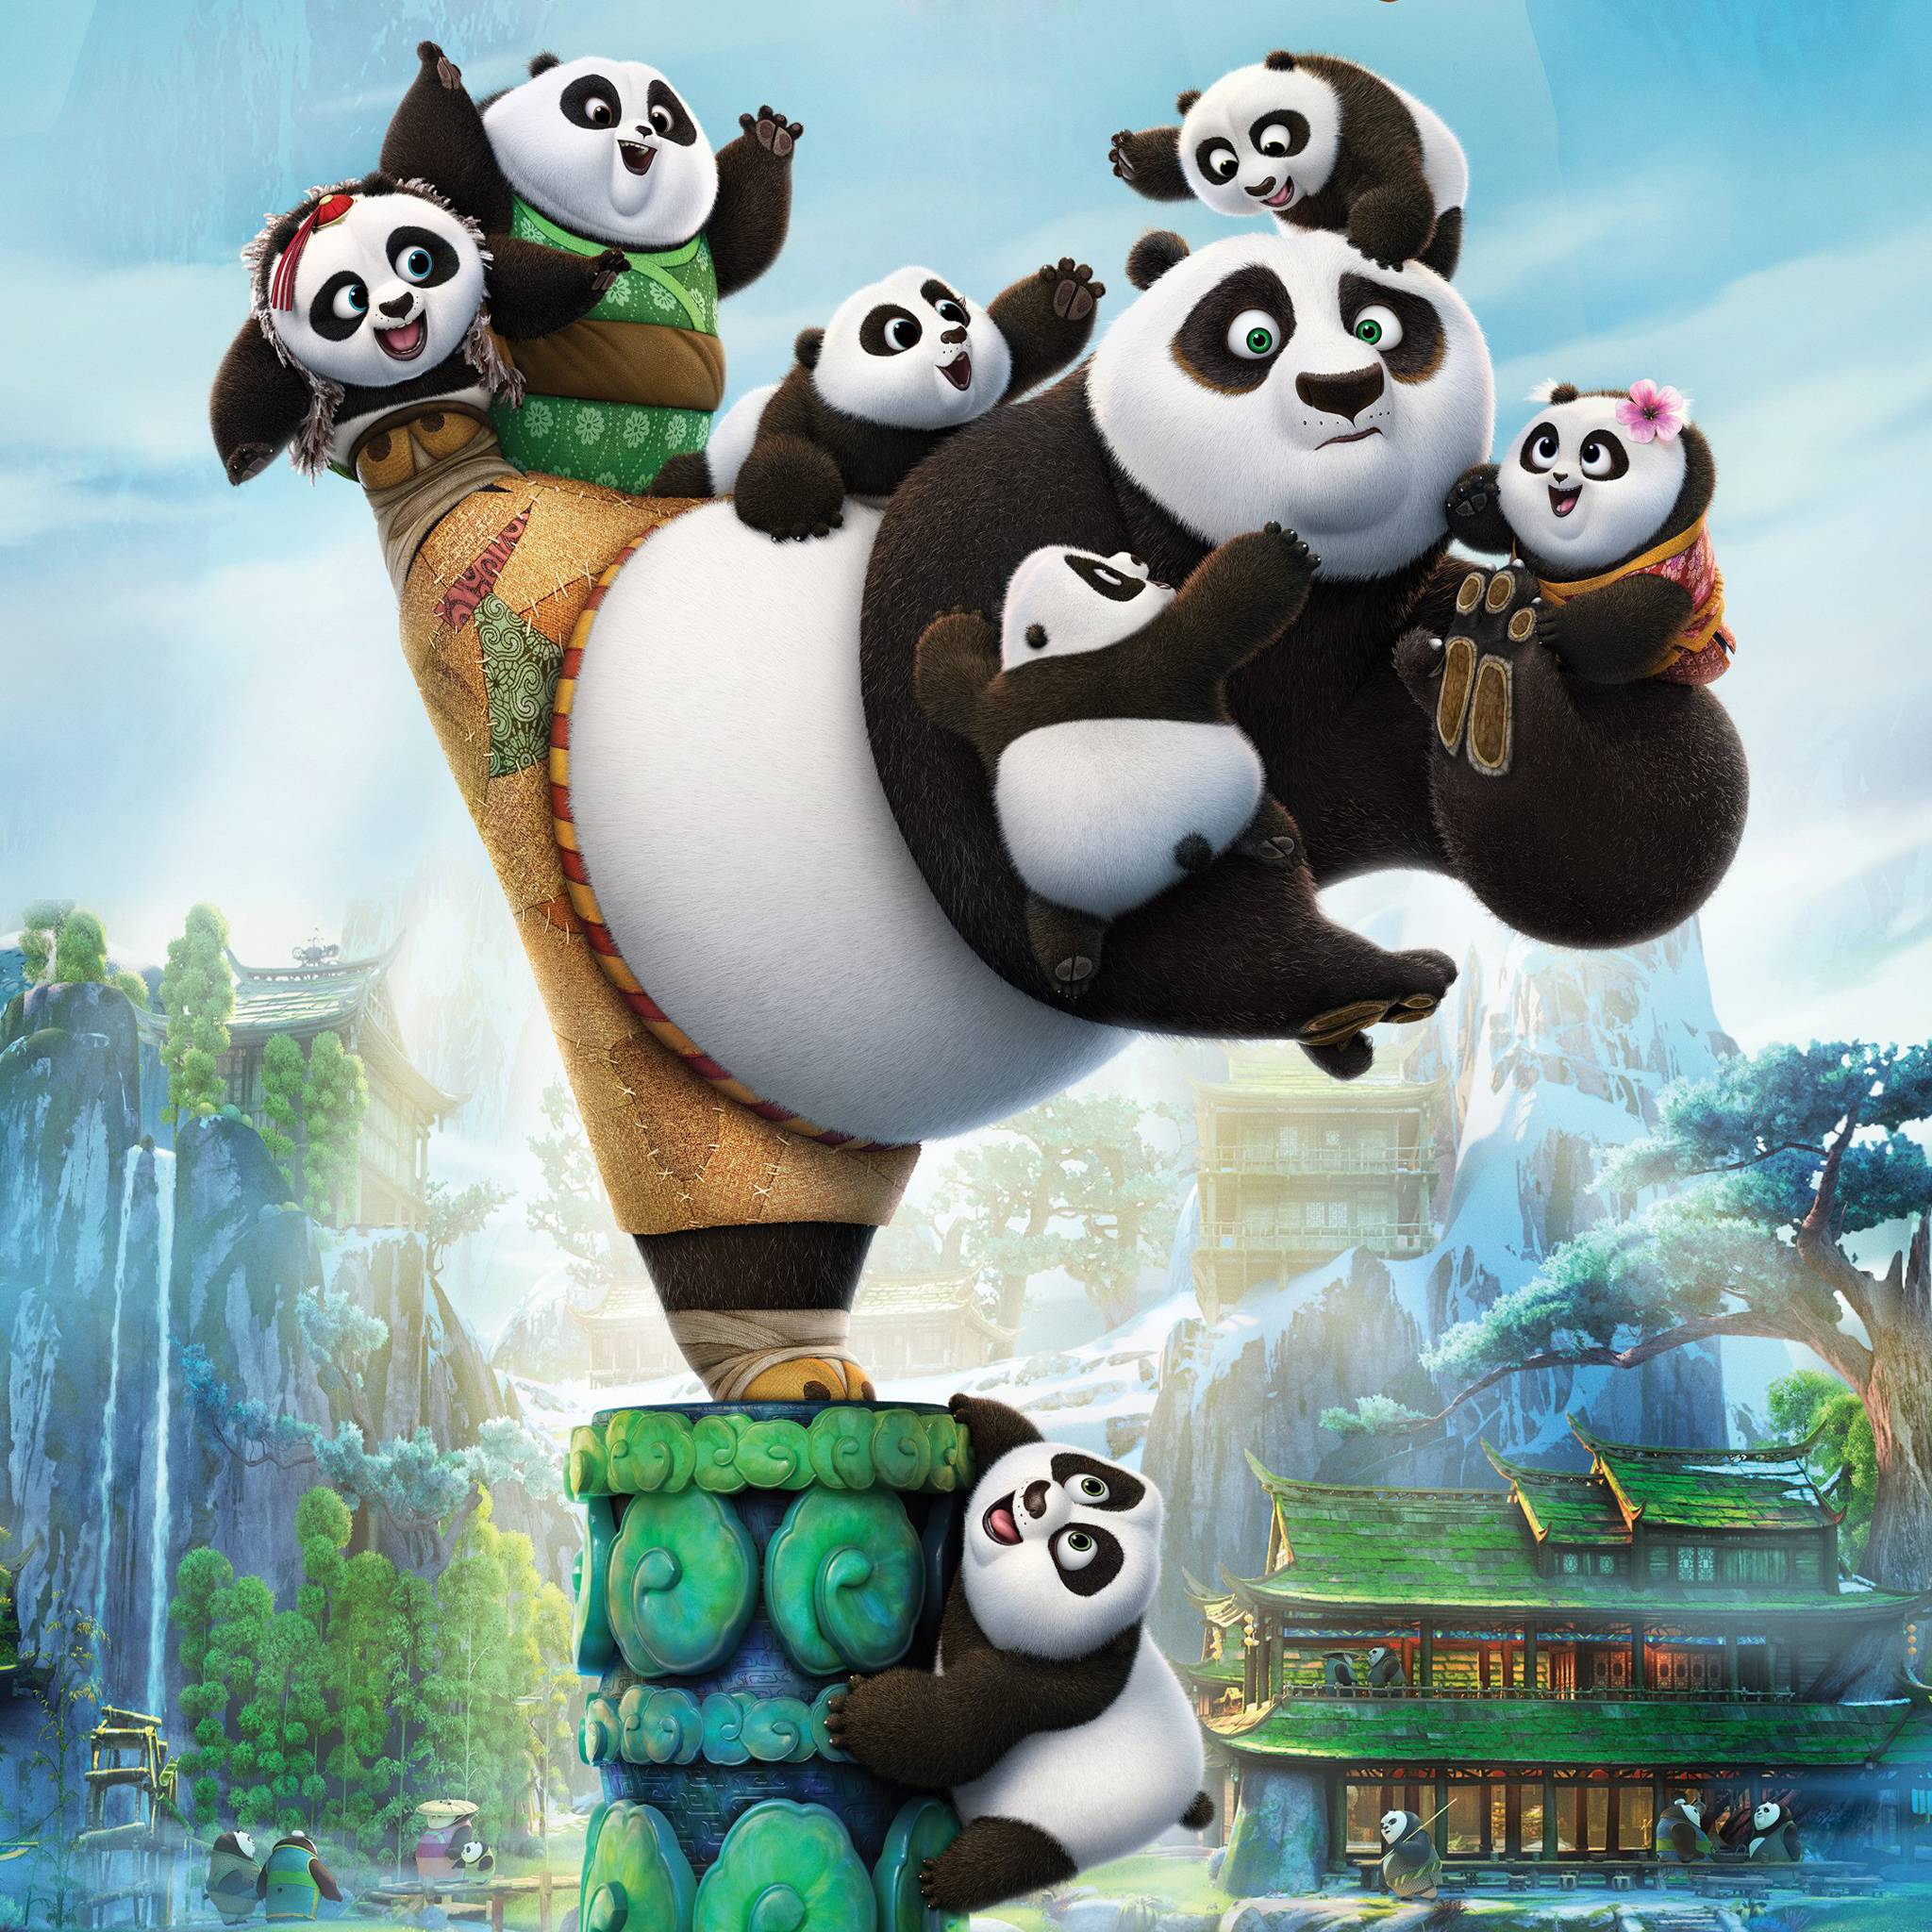 2048x2048 Hình nền Kung Fu Panda 3 dễ thương.  Tải xuống